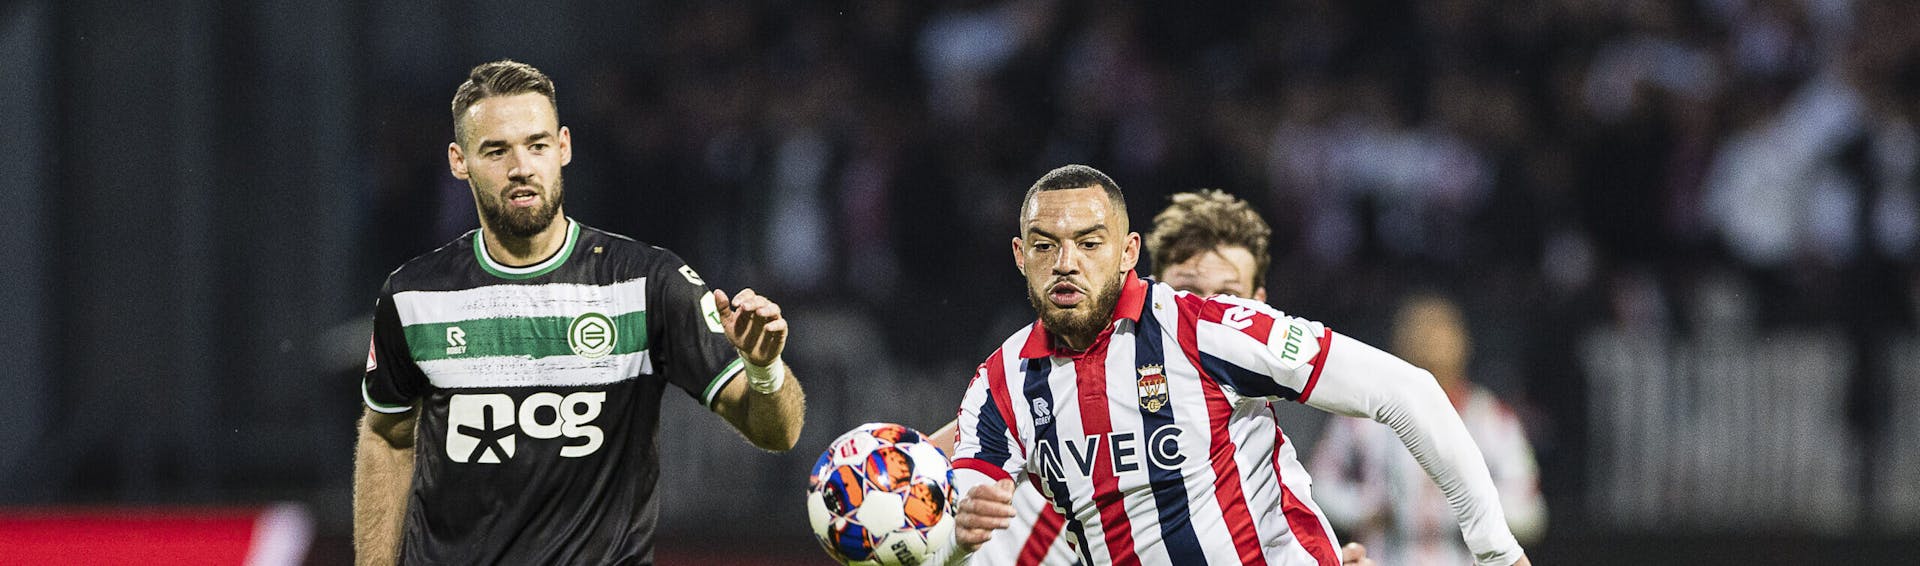 Willem II wint niet van FC Groningen en moet promotiefeest uitstellen 